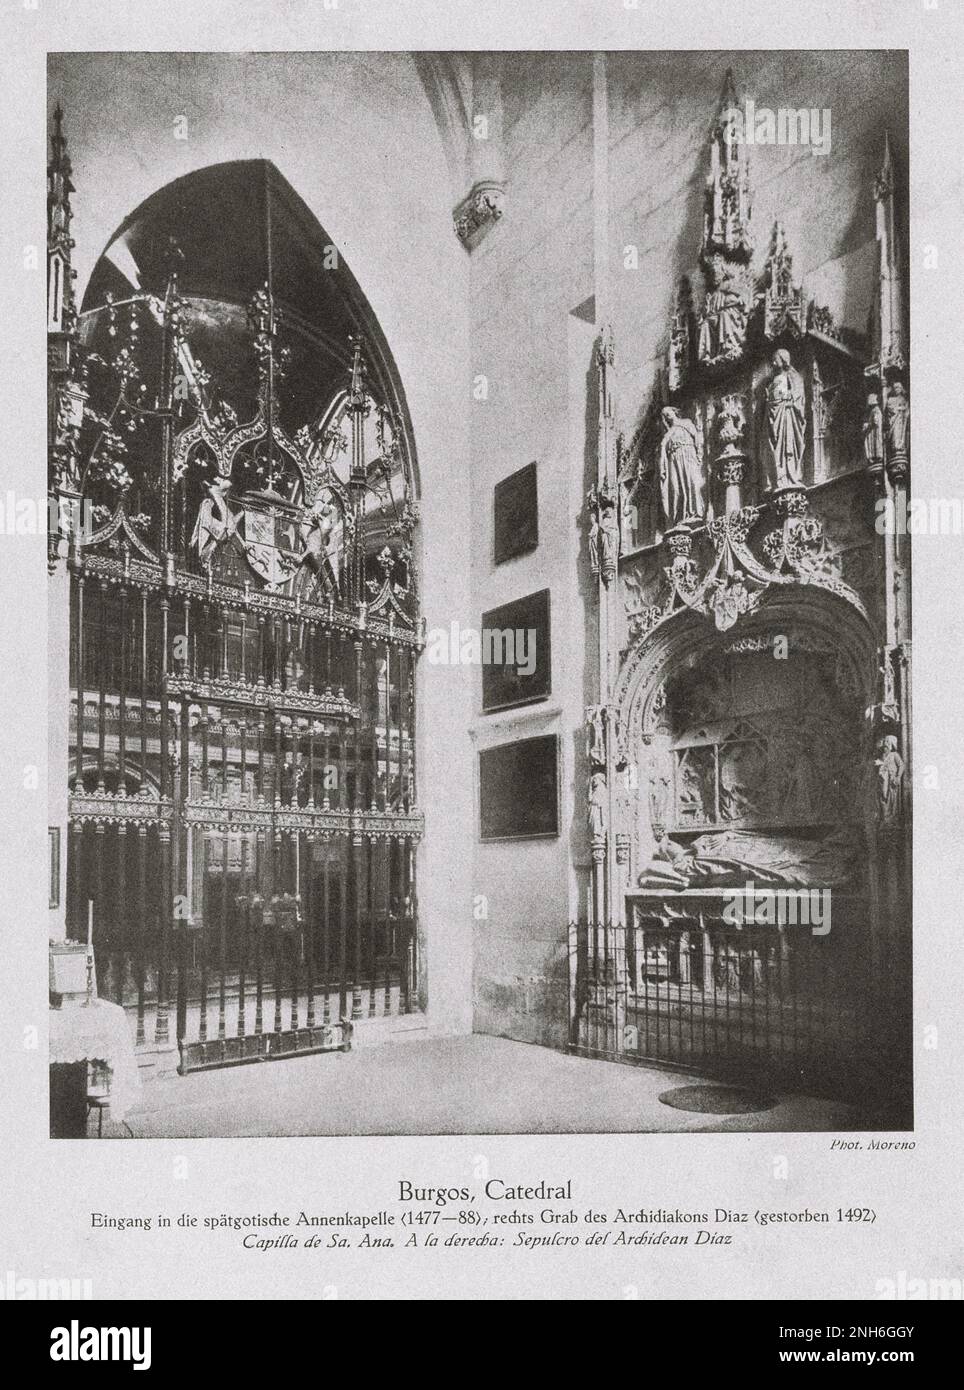 Architektur des alten Spaniens. Oldtimer-Foto der Kathedrale von Burgos. Eintritt zum spätgotischen Сhapel (1477-1488), rechtes Grab von Erzdiakon Diaz (gestorben 1492) Stockfoto